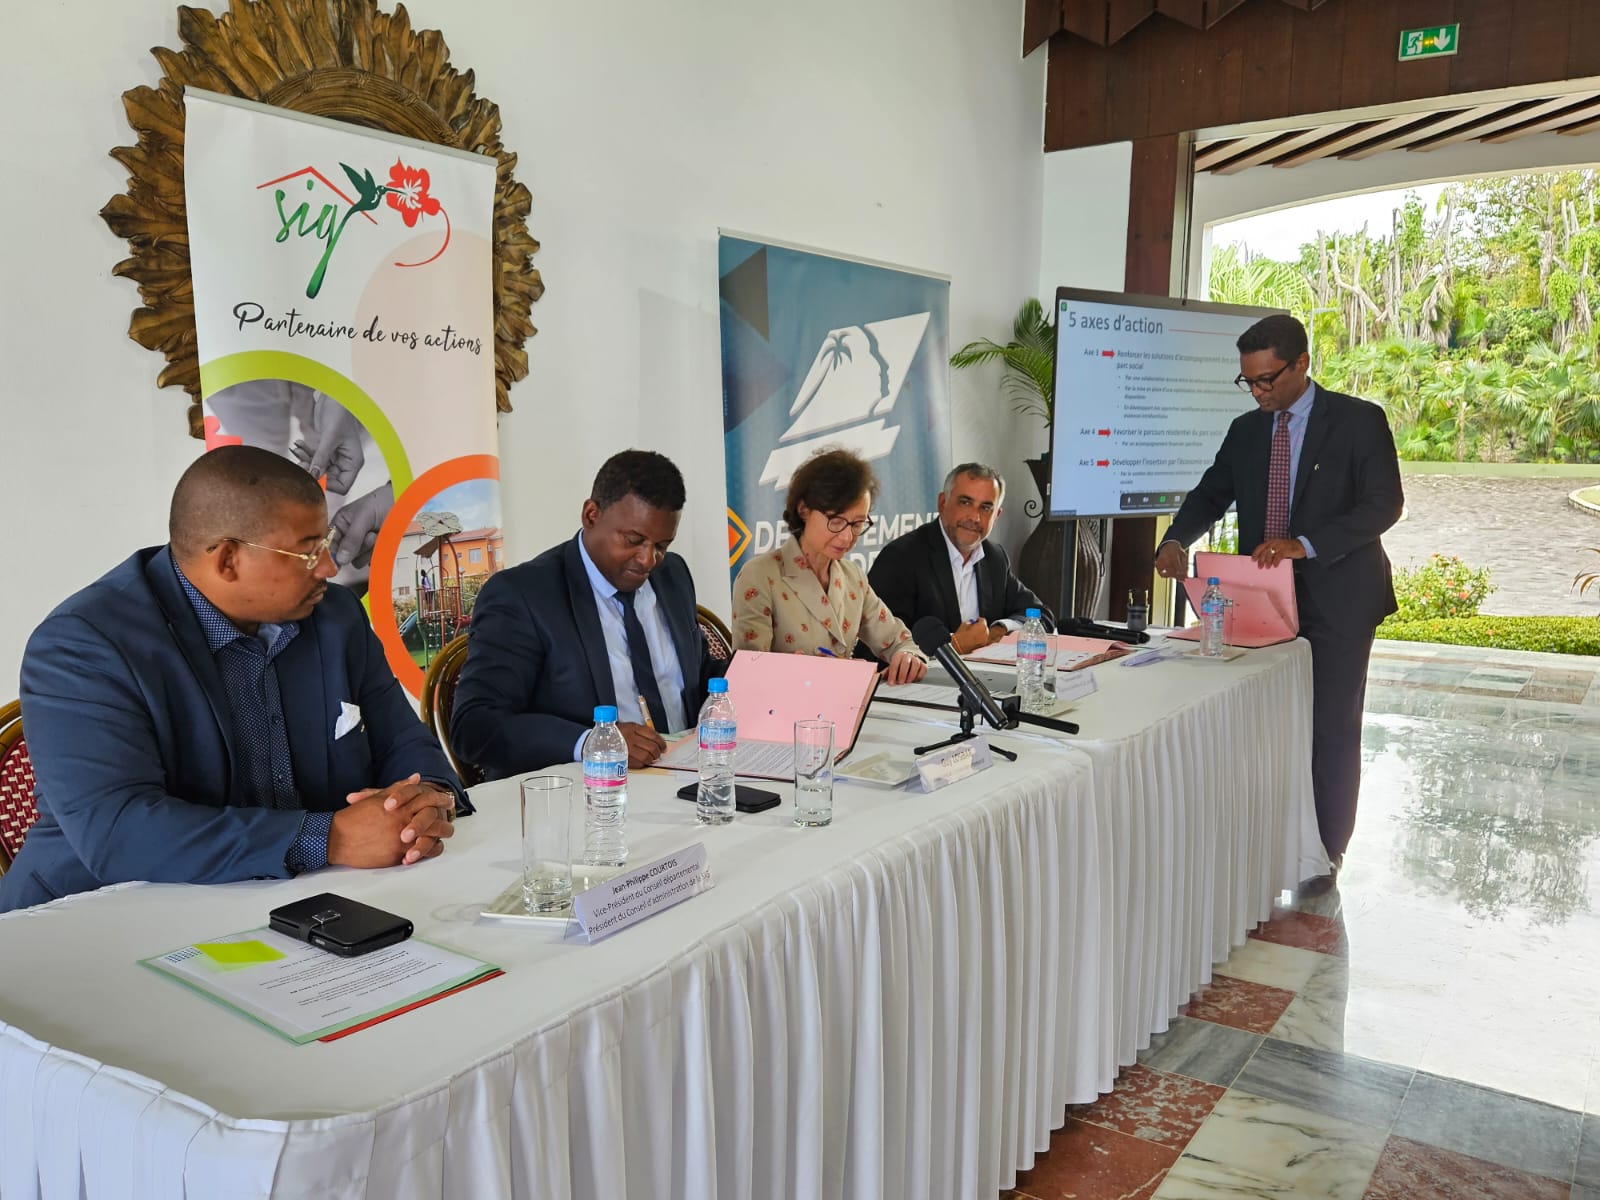     Une convention de partenariat pour agir en faveur de l'habitat en Guadeloupe

